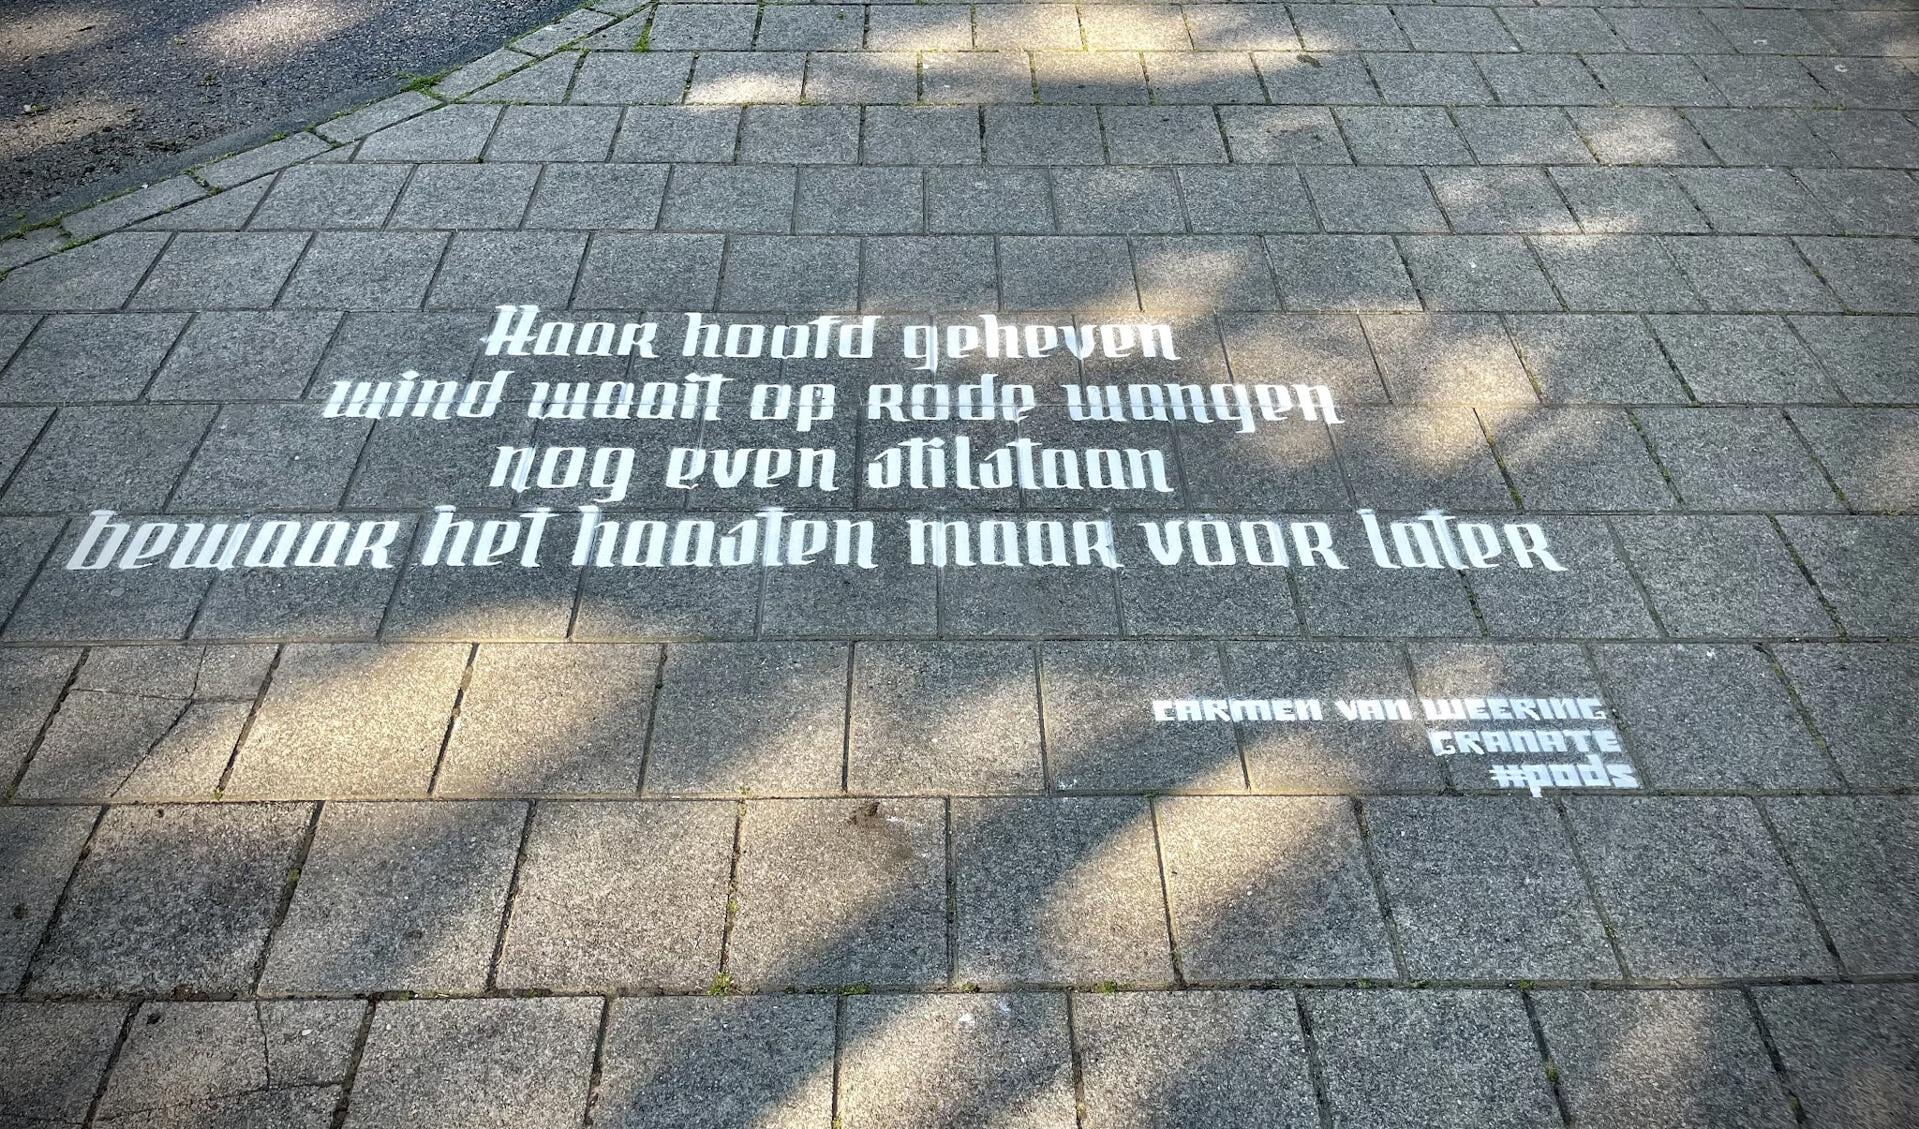 Een van de gedichten in Amsterdam/Noord.